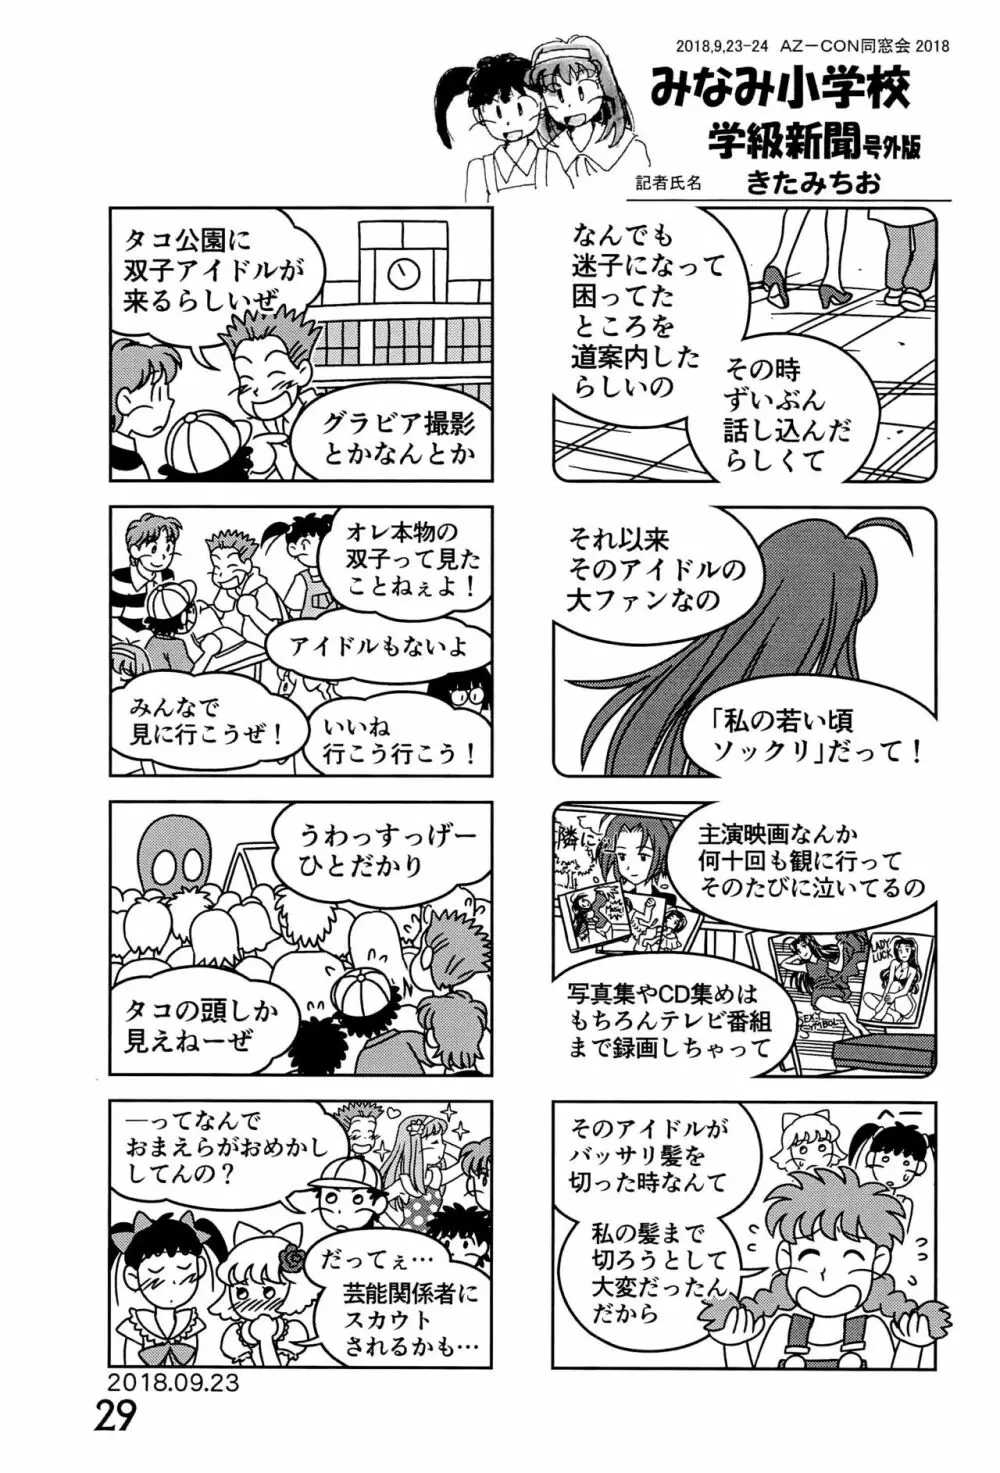 みなみ小学校学級新聞2018+号外版 29ページ